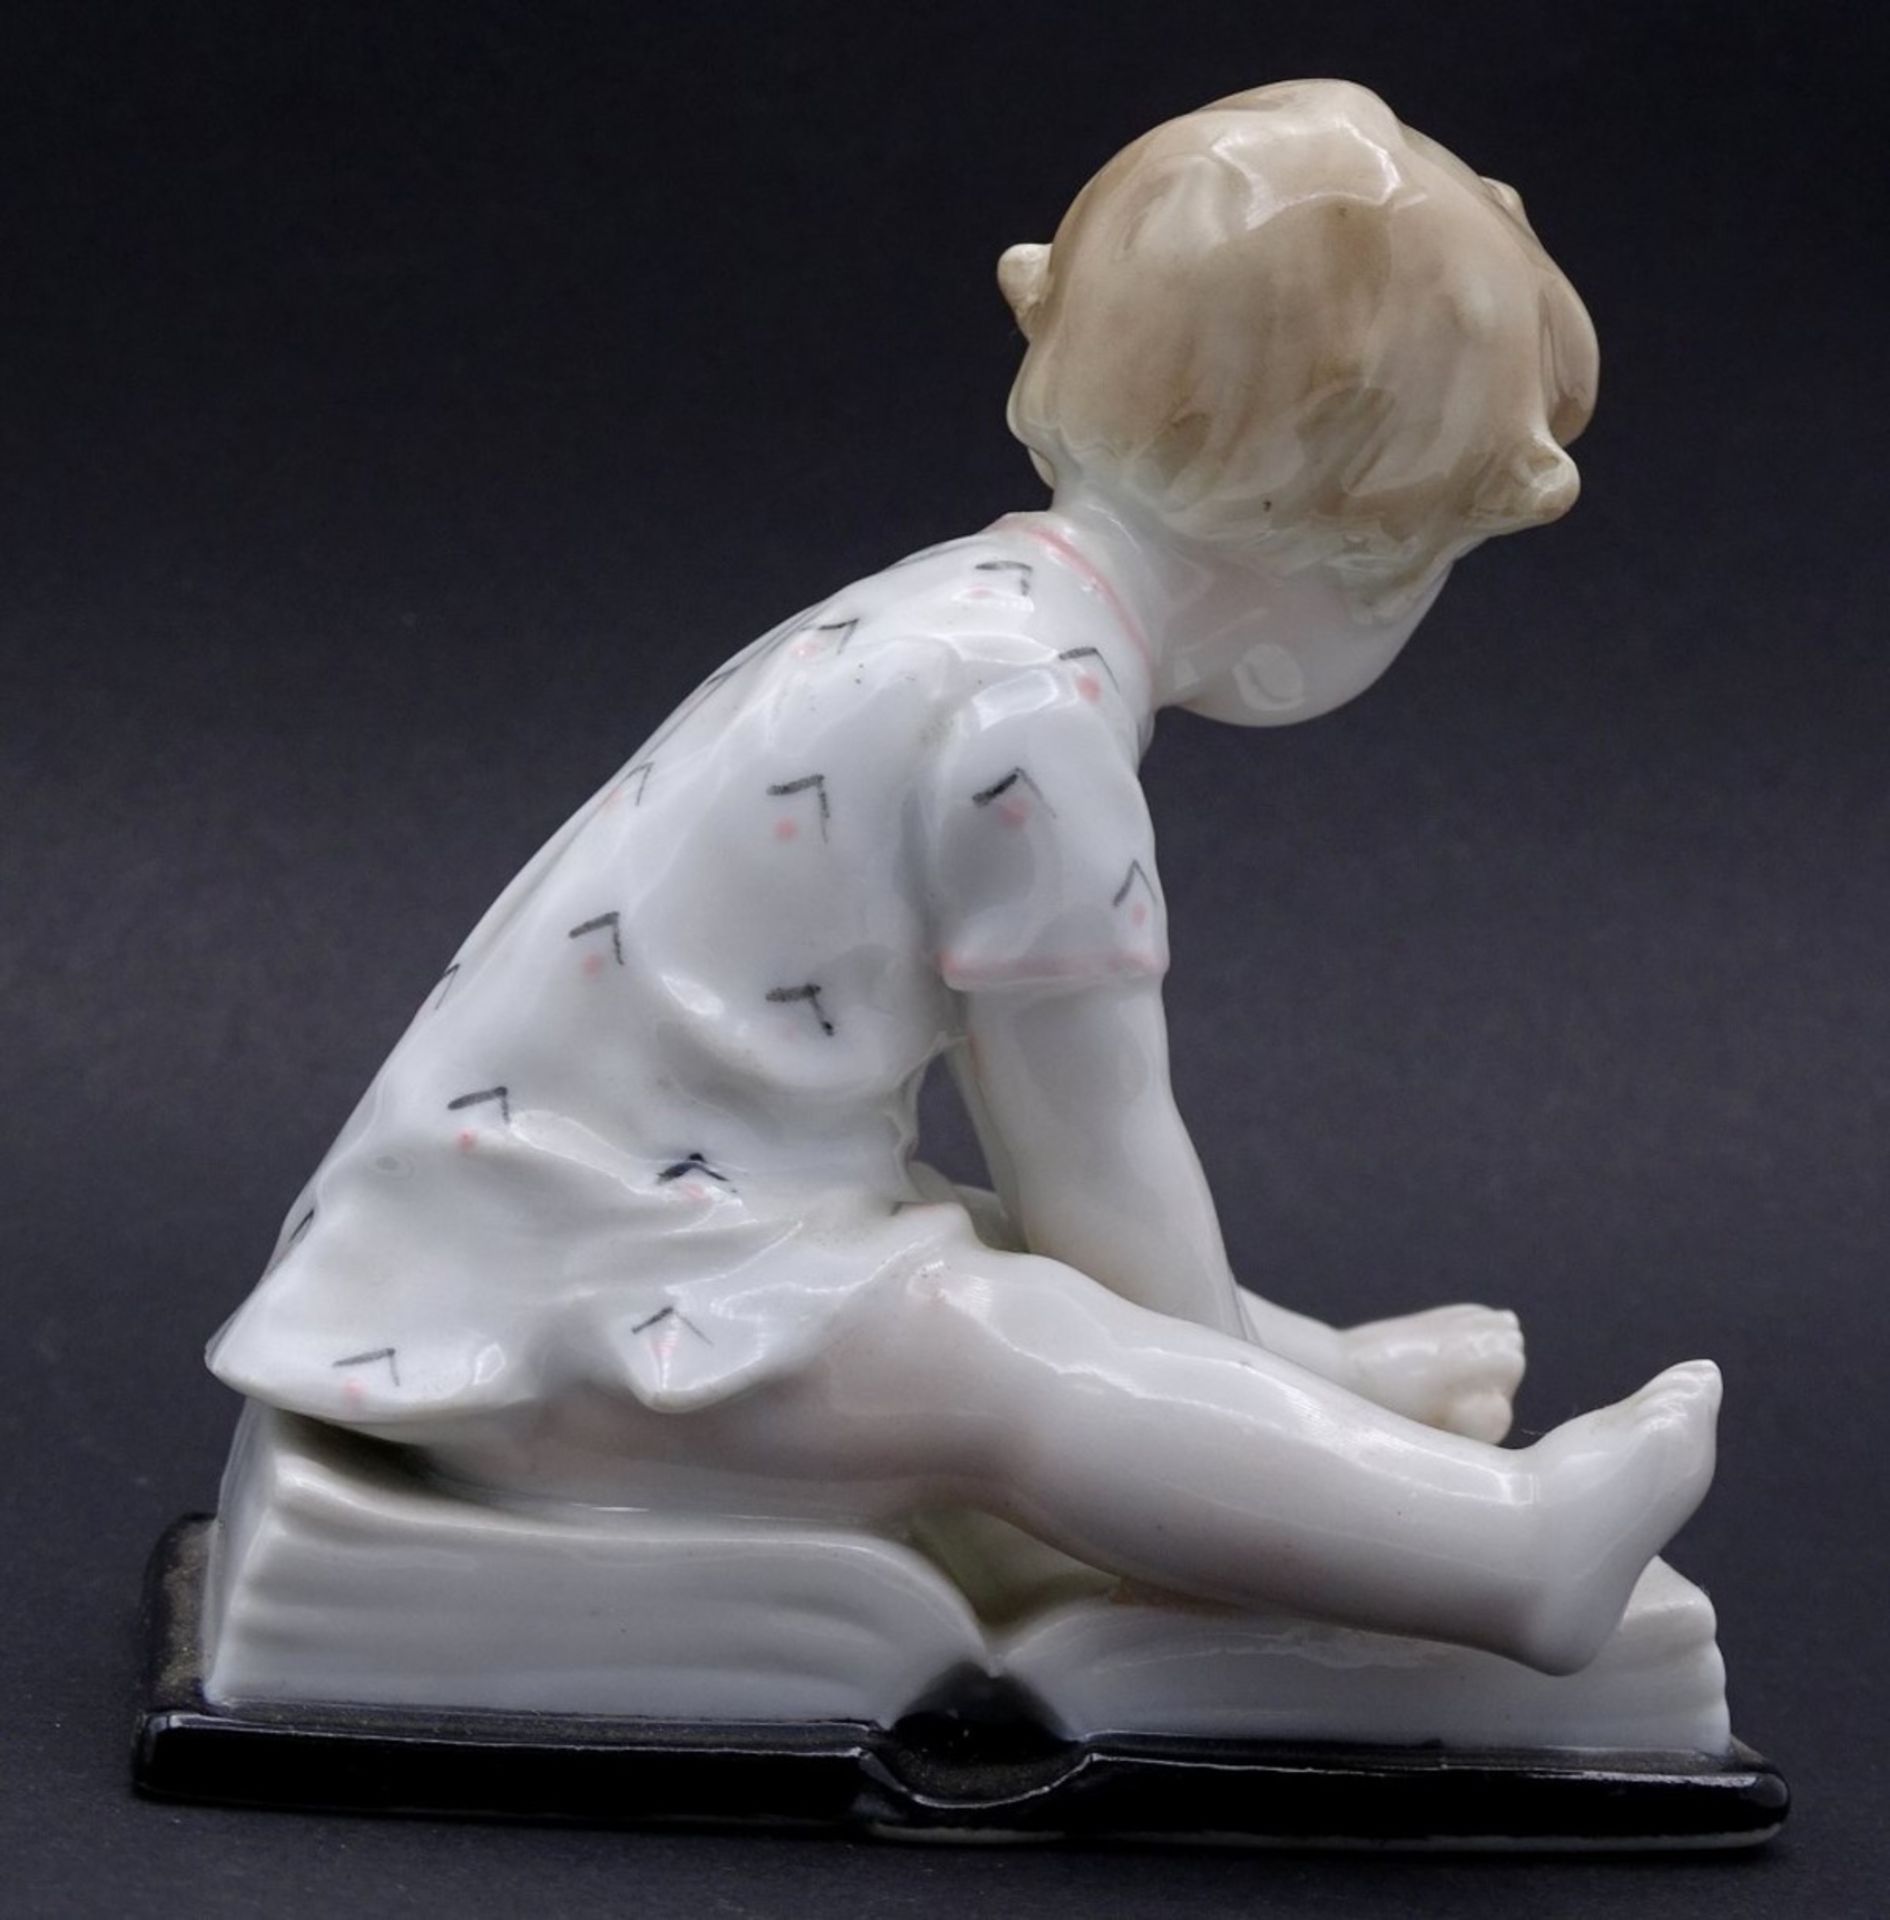 Porzellan Figur "Ens Volkstedt" Kind auf Buch sitzend, H-10cm - Image 3 of 6